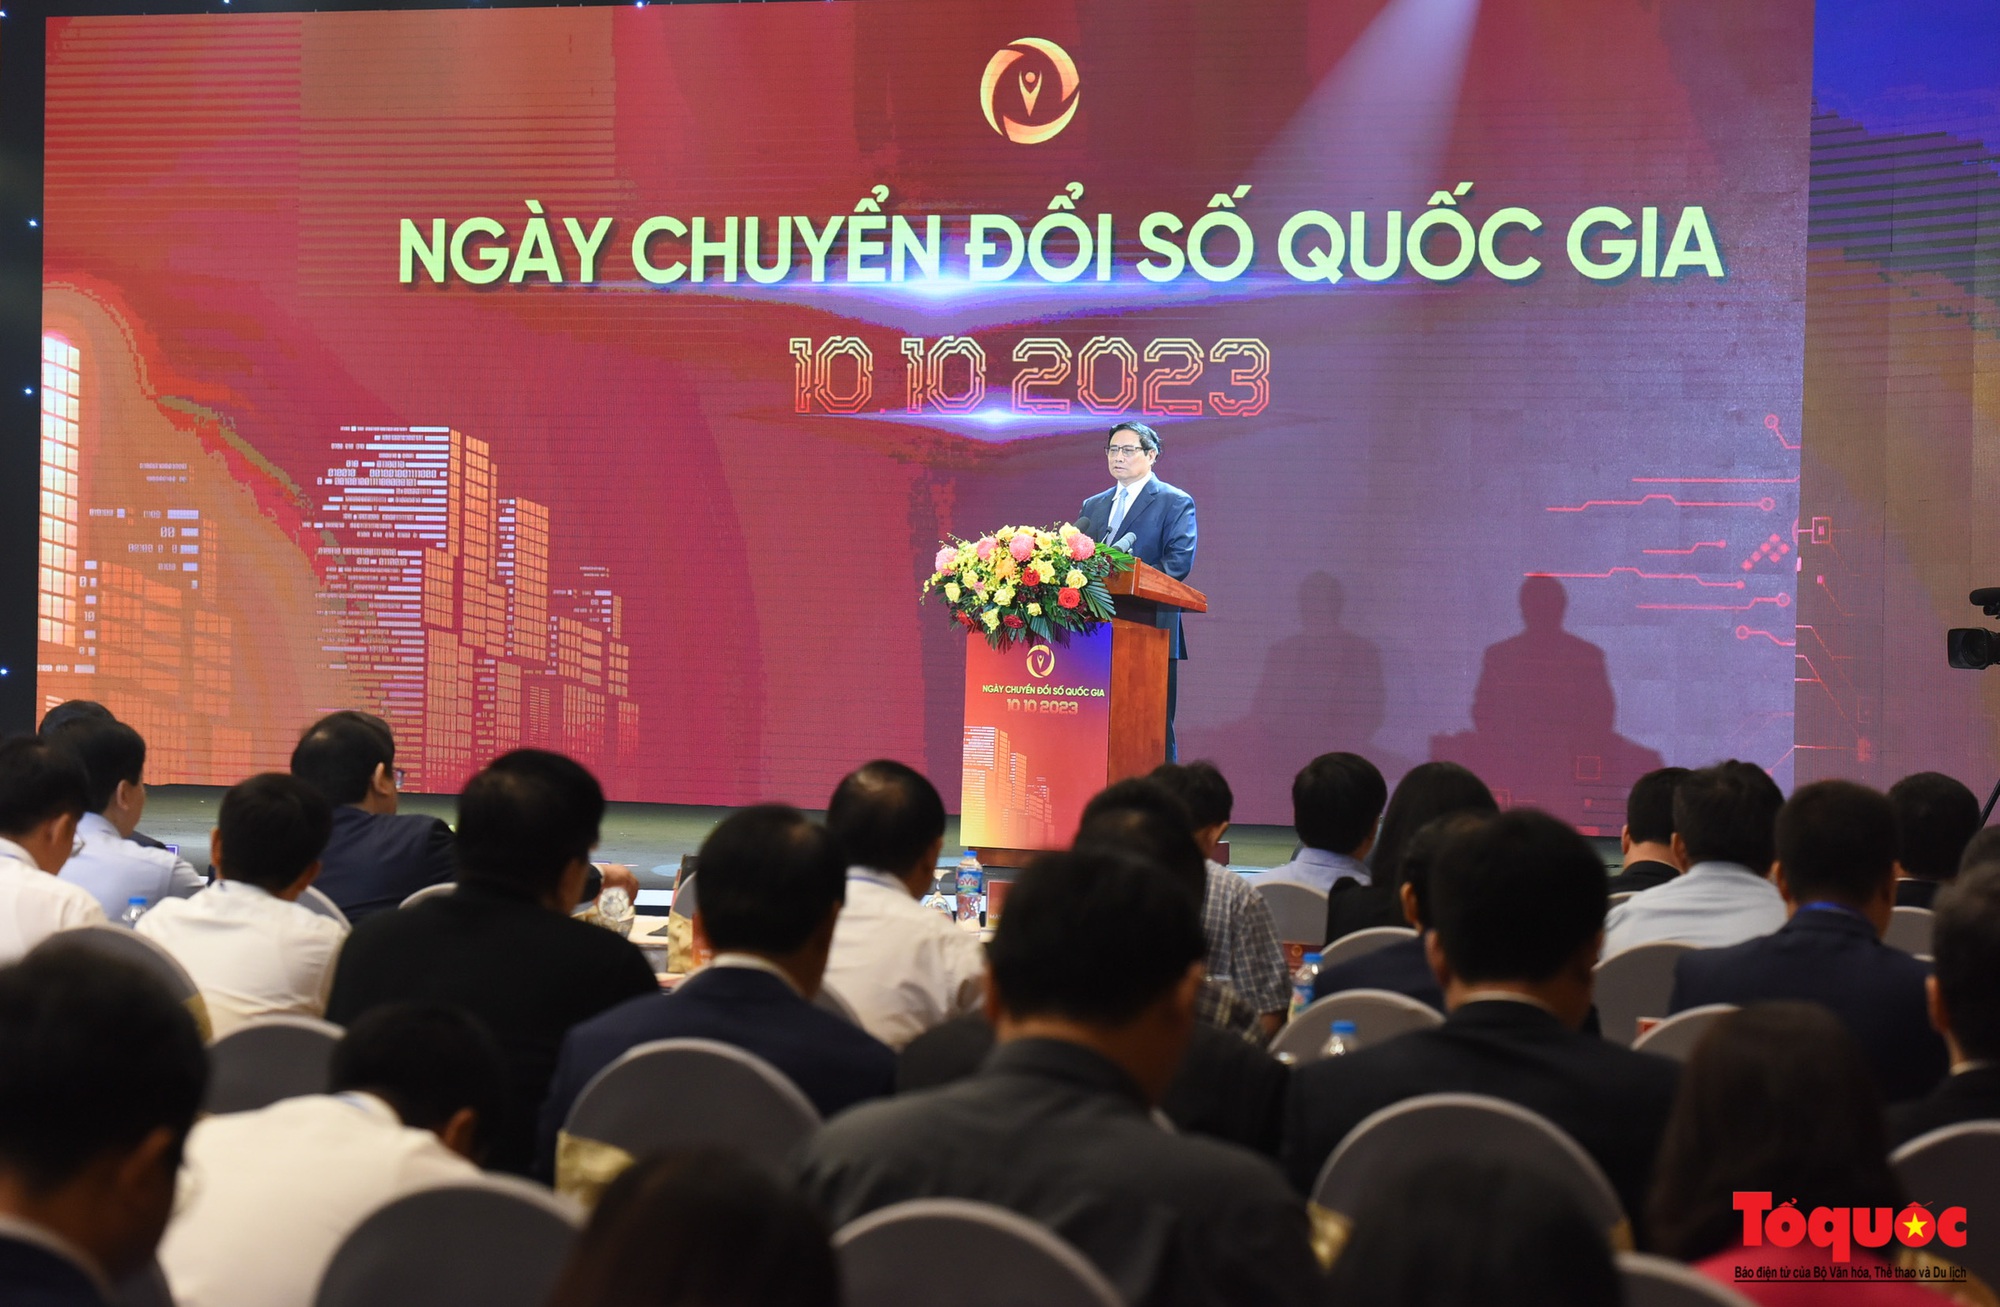 Chùm ảnh: Thủ tướng Phạm Minh Chính dự Ngày Chuyển đổi số quốc gia năm 2023 - Ảnh 6.